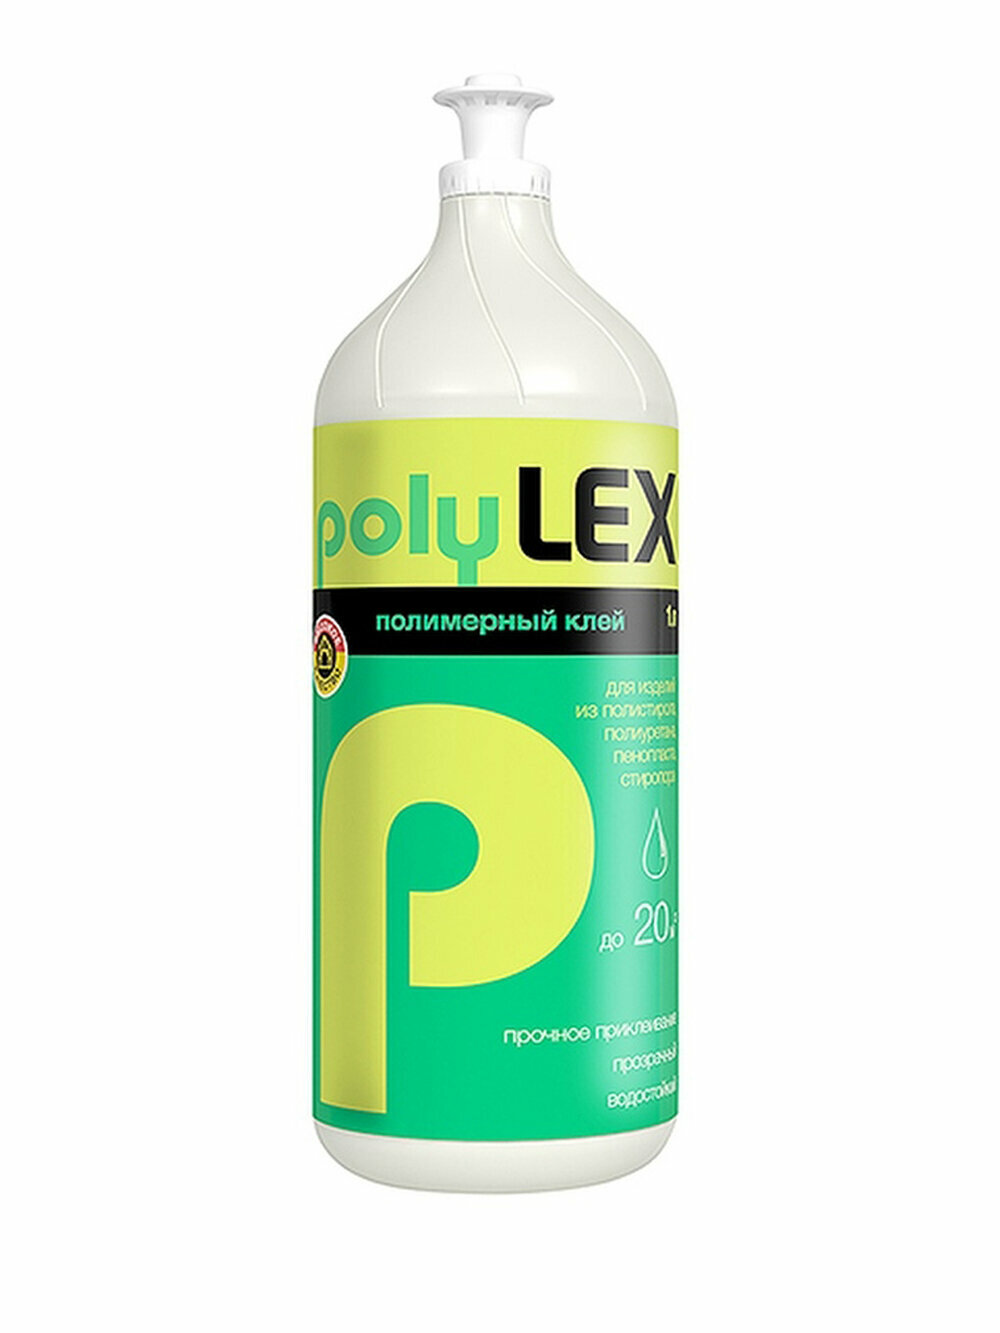 Клей Polylex, полимерный, 1 л, 10326R